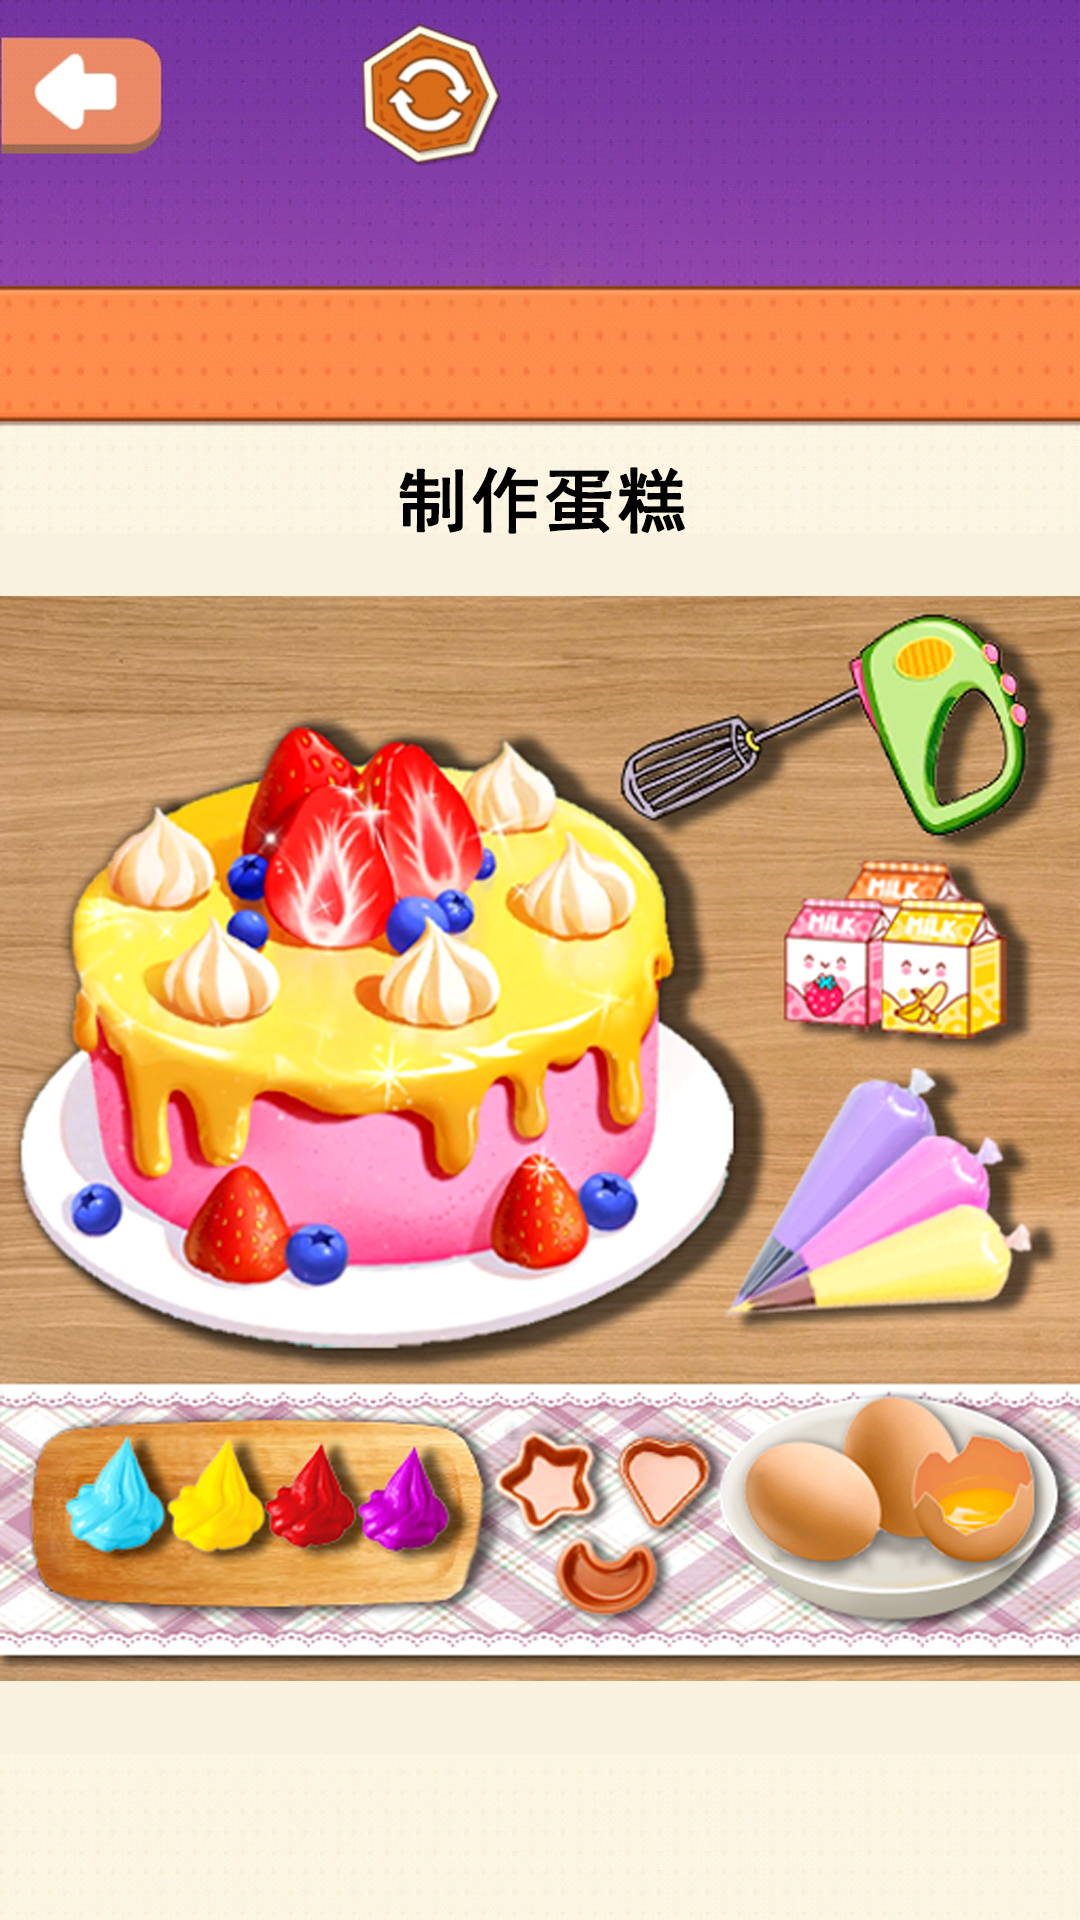 小美做蛋糕-美食烹饪模拟体验 v1.0-模拟体验烹饪美食蛋糕做饭游戏截图1